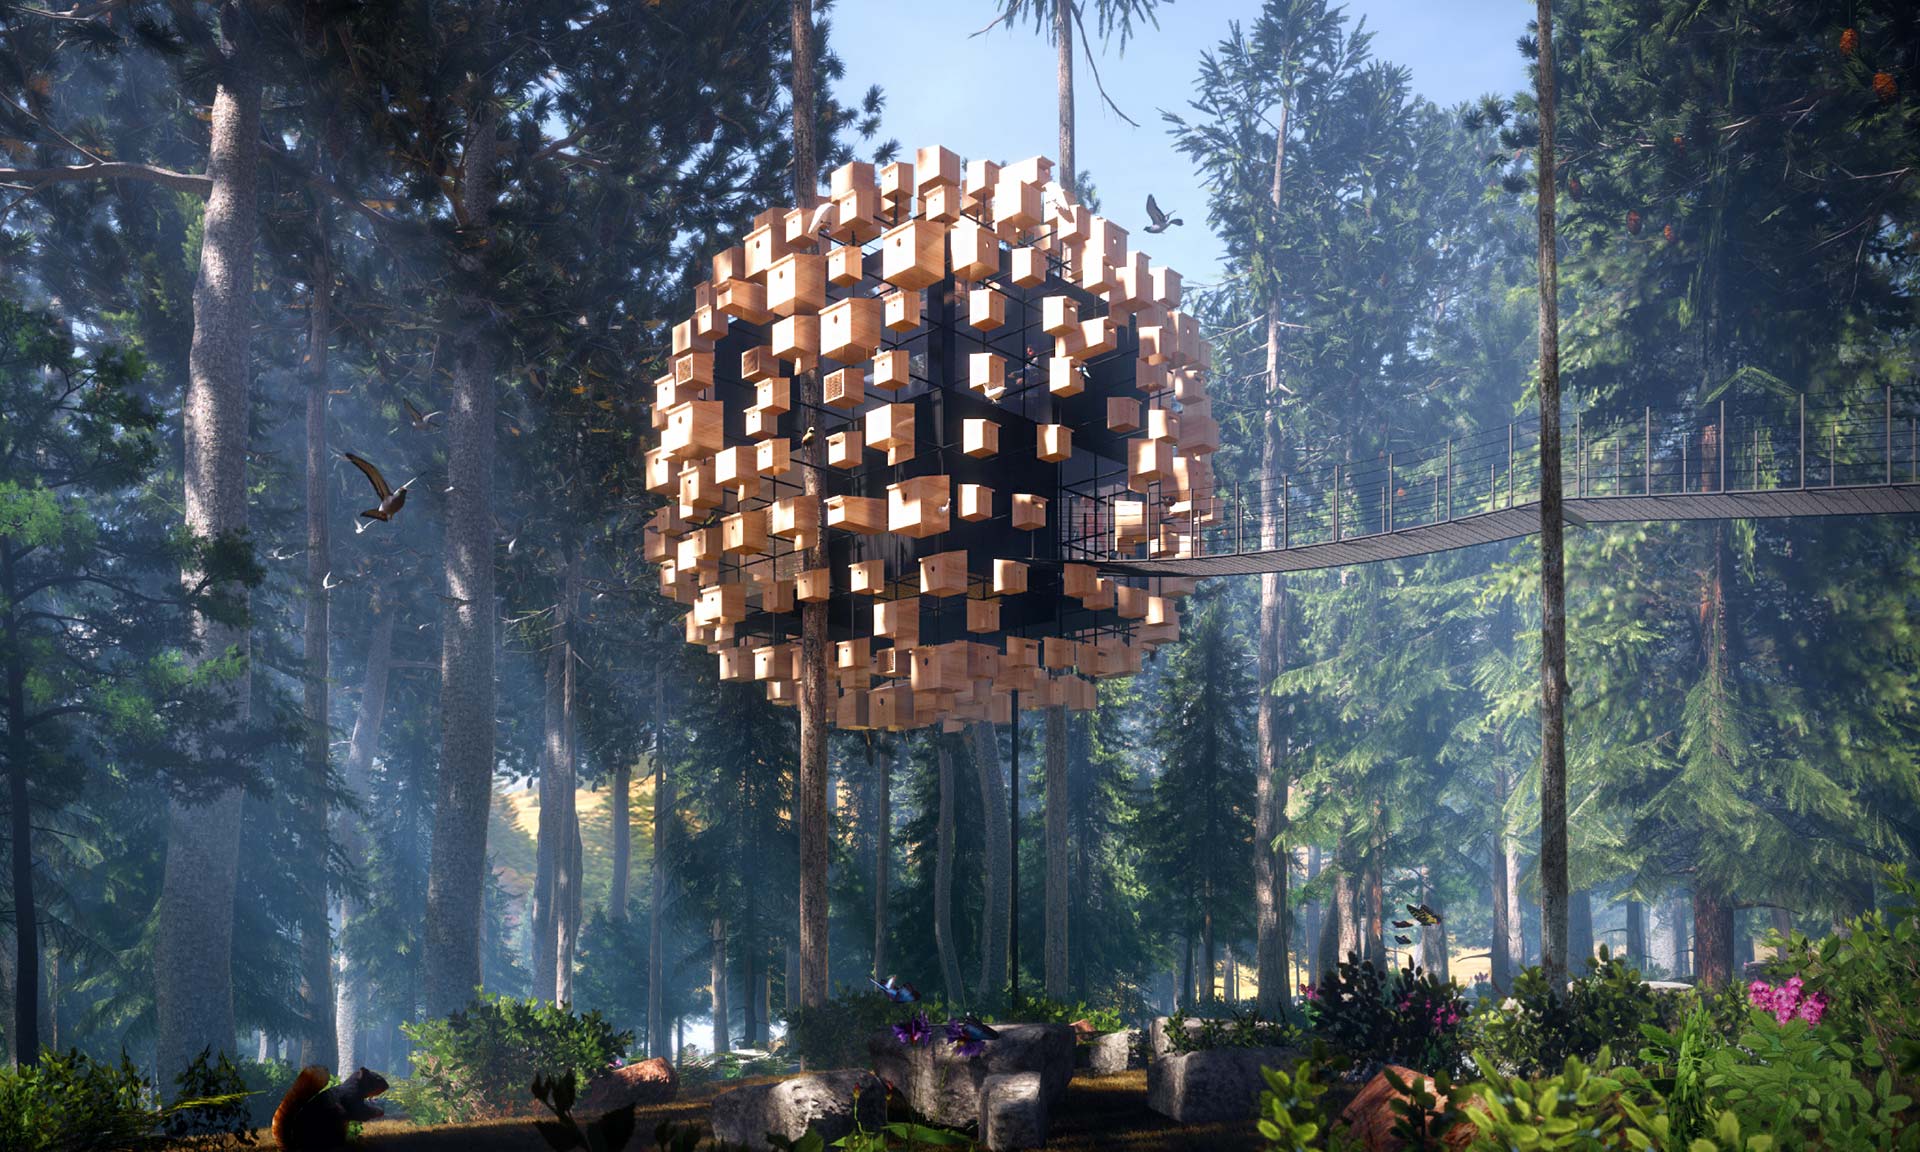 BIG postaví osmý Treehotel ve tvaru koule složené z 350 ptačích budek